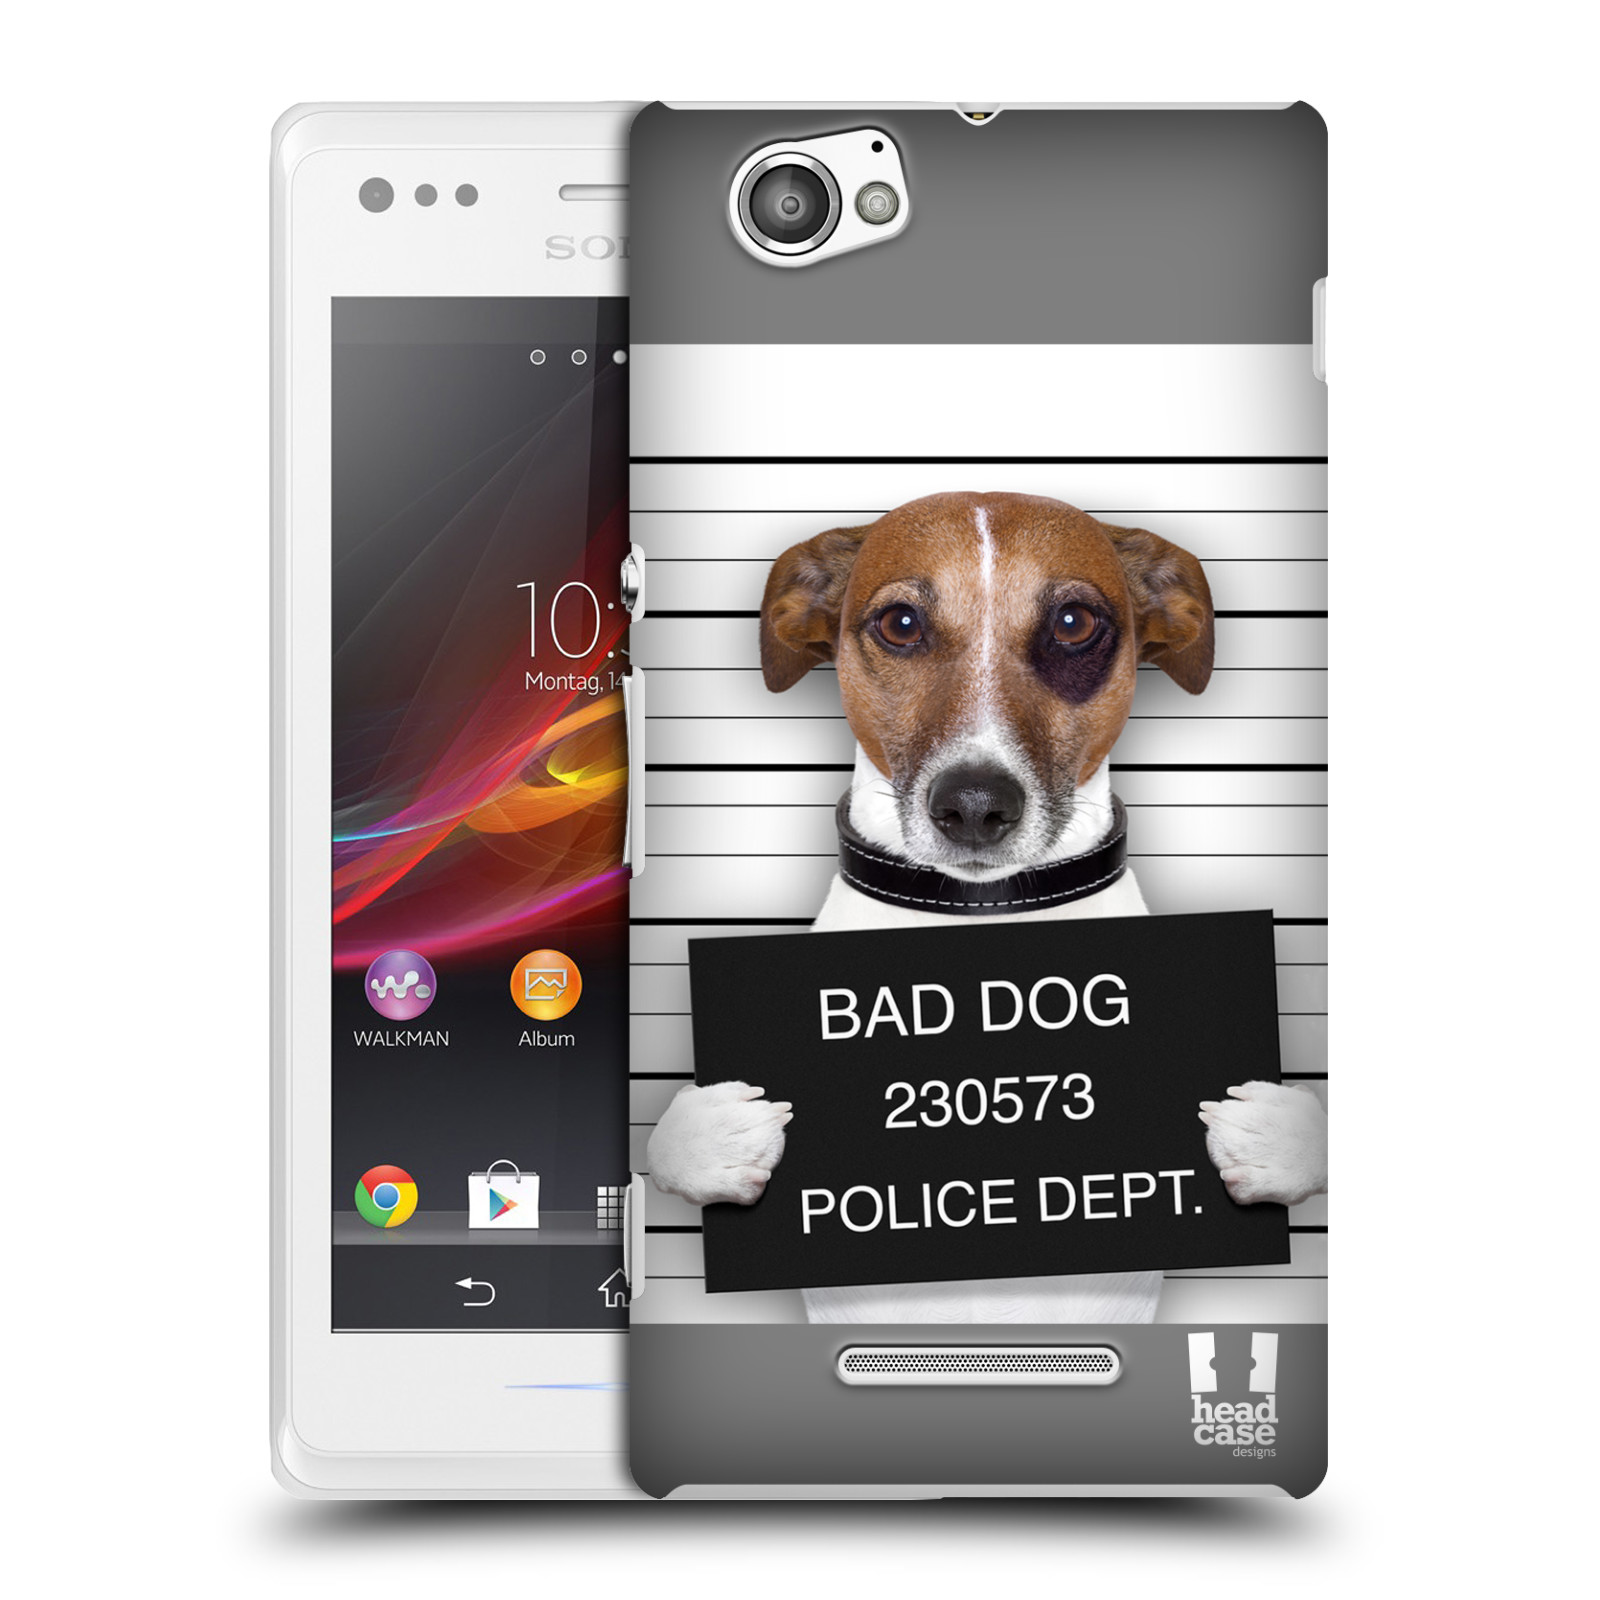 HEAD CASE plastový obal na mobil Sony Xperia M vzor Legrační zvířátka pejsek na policii